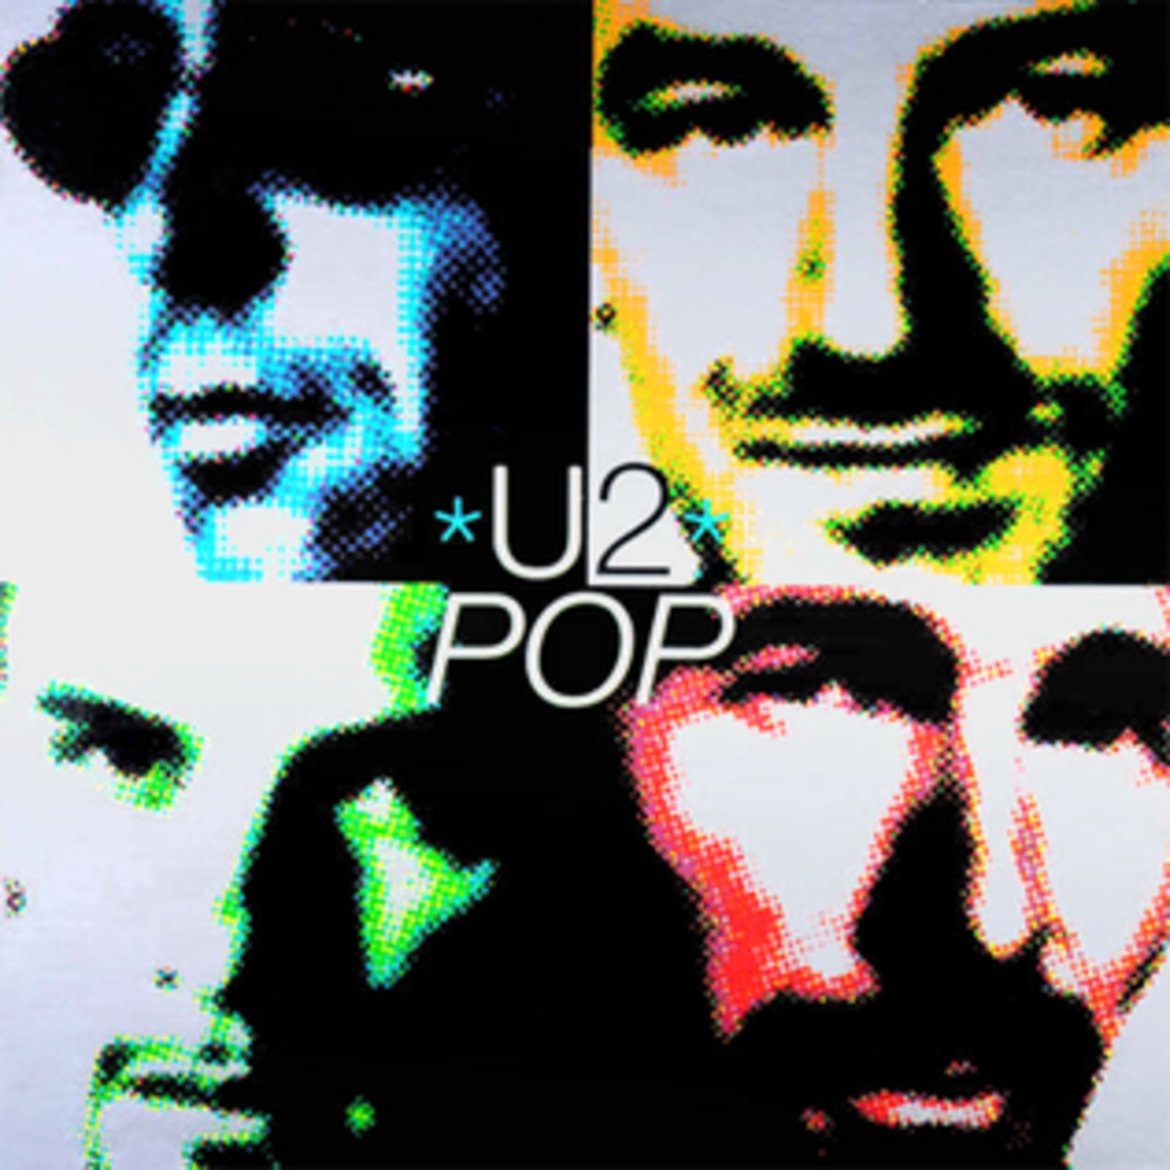  U2 - Pop 

В началото на 90-те години на миналия век бандата започва да експериментира с по-европейско и по-комерсиално звучене, което обаче се приема противоречиво от феновете. Албумът "Pop" е кулминацията на този спорен за U2 период. 

Той трудно напуска пределите на студиото – барабанистът Лари Мълън претърпява операция на гърба, което значително забавя записването на албума. Групата прекарва над три месеца в опити да сглоби масата от музикални фрагменти, които записва. Песните търпят непрекъснати преправяния. 

В крайна сметка бързането "Pop" да излезе на музикалния пазар означава, че музикантите не харесват особено съдържанието му. Боно от своя страна го нарича "най-скъпата пробна звукозаписна сесия, която някога сме имали".